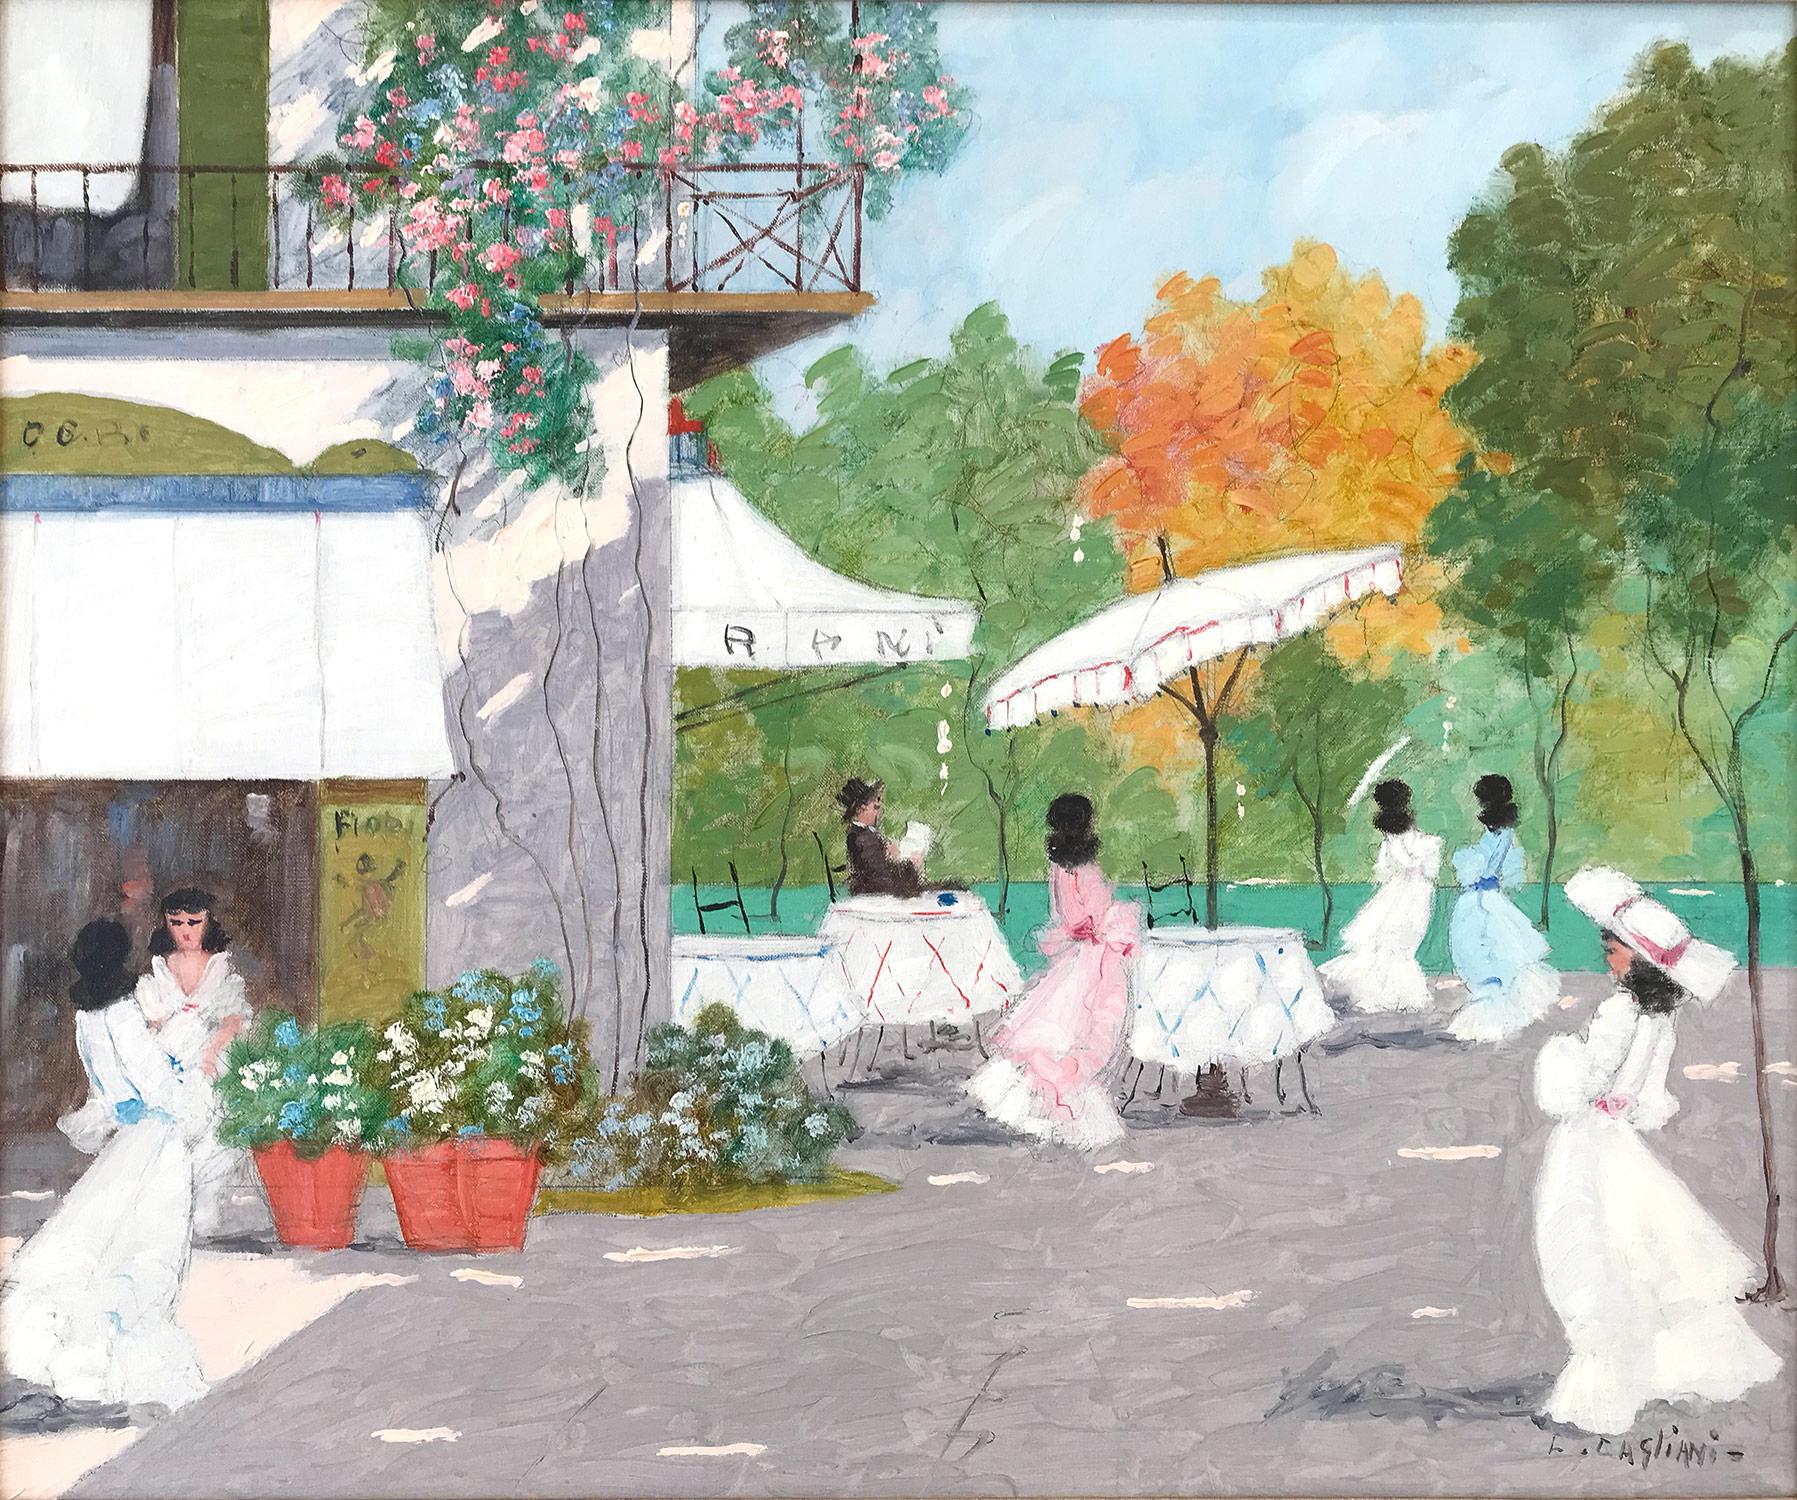 impressionist cafe scene